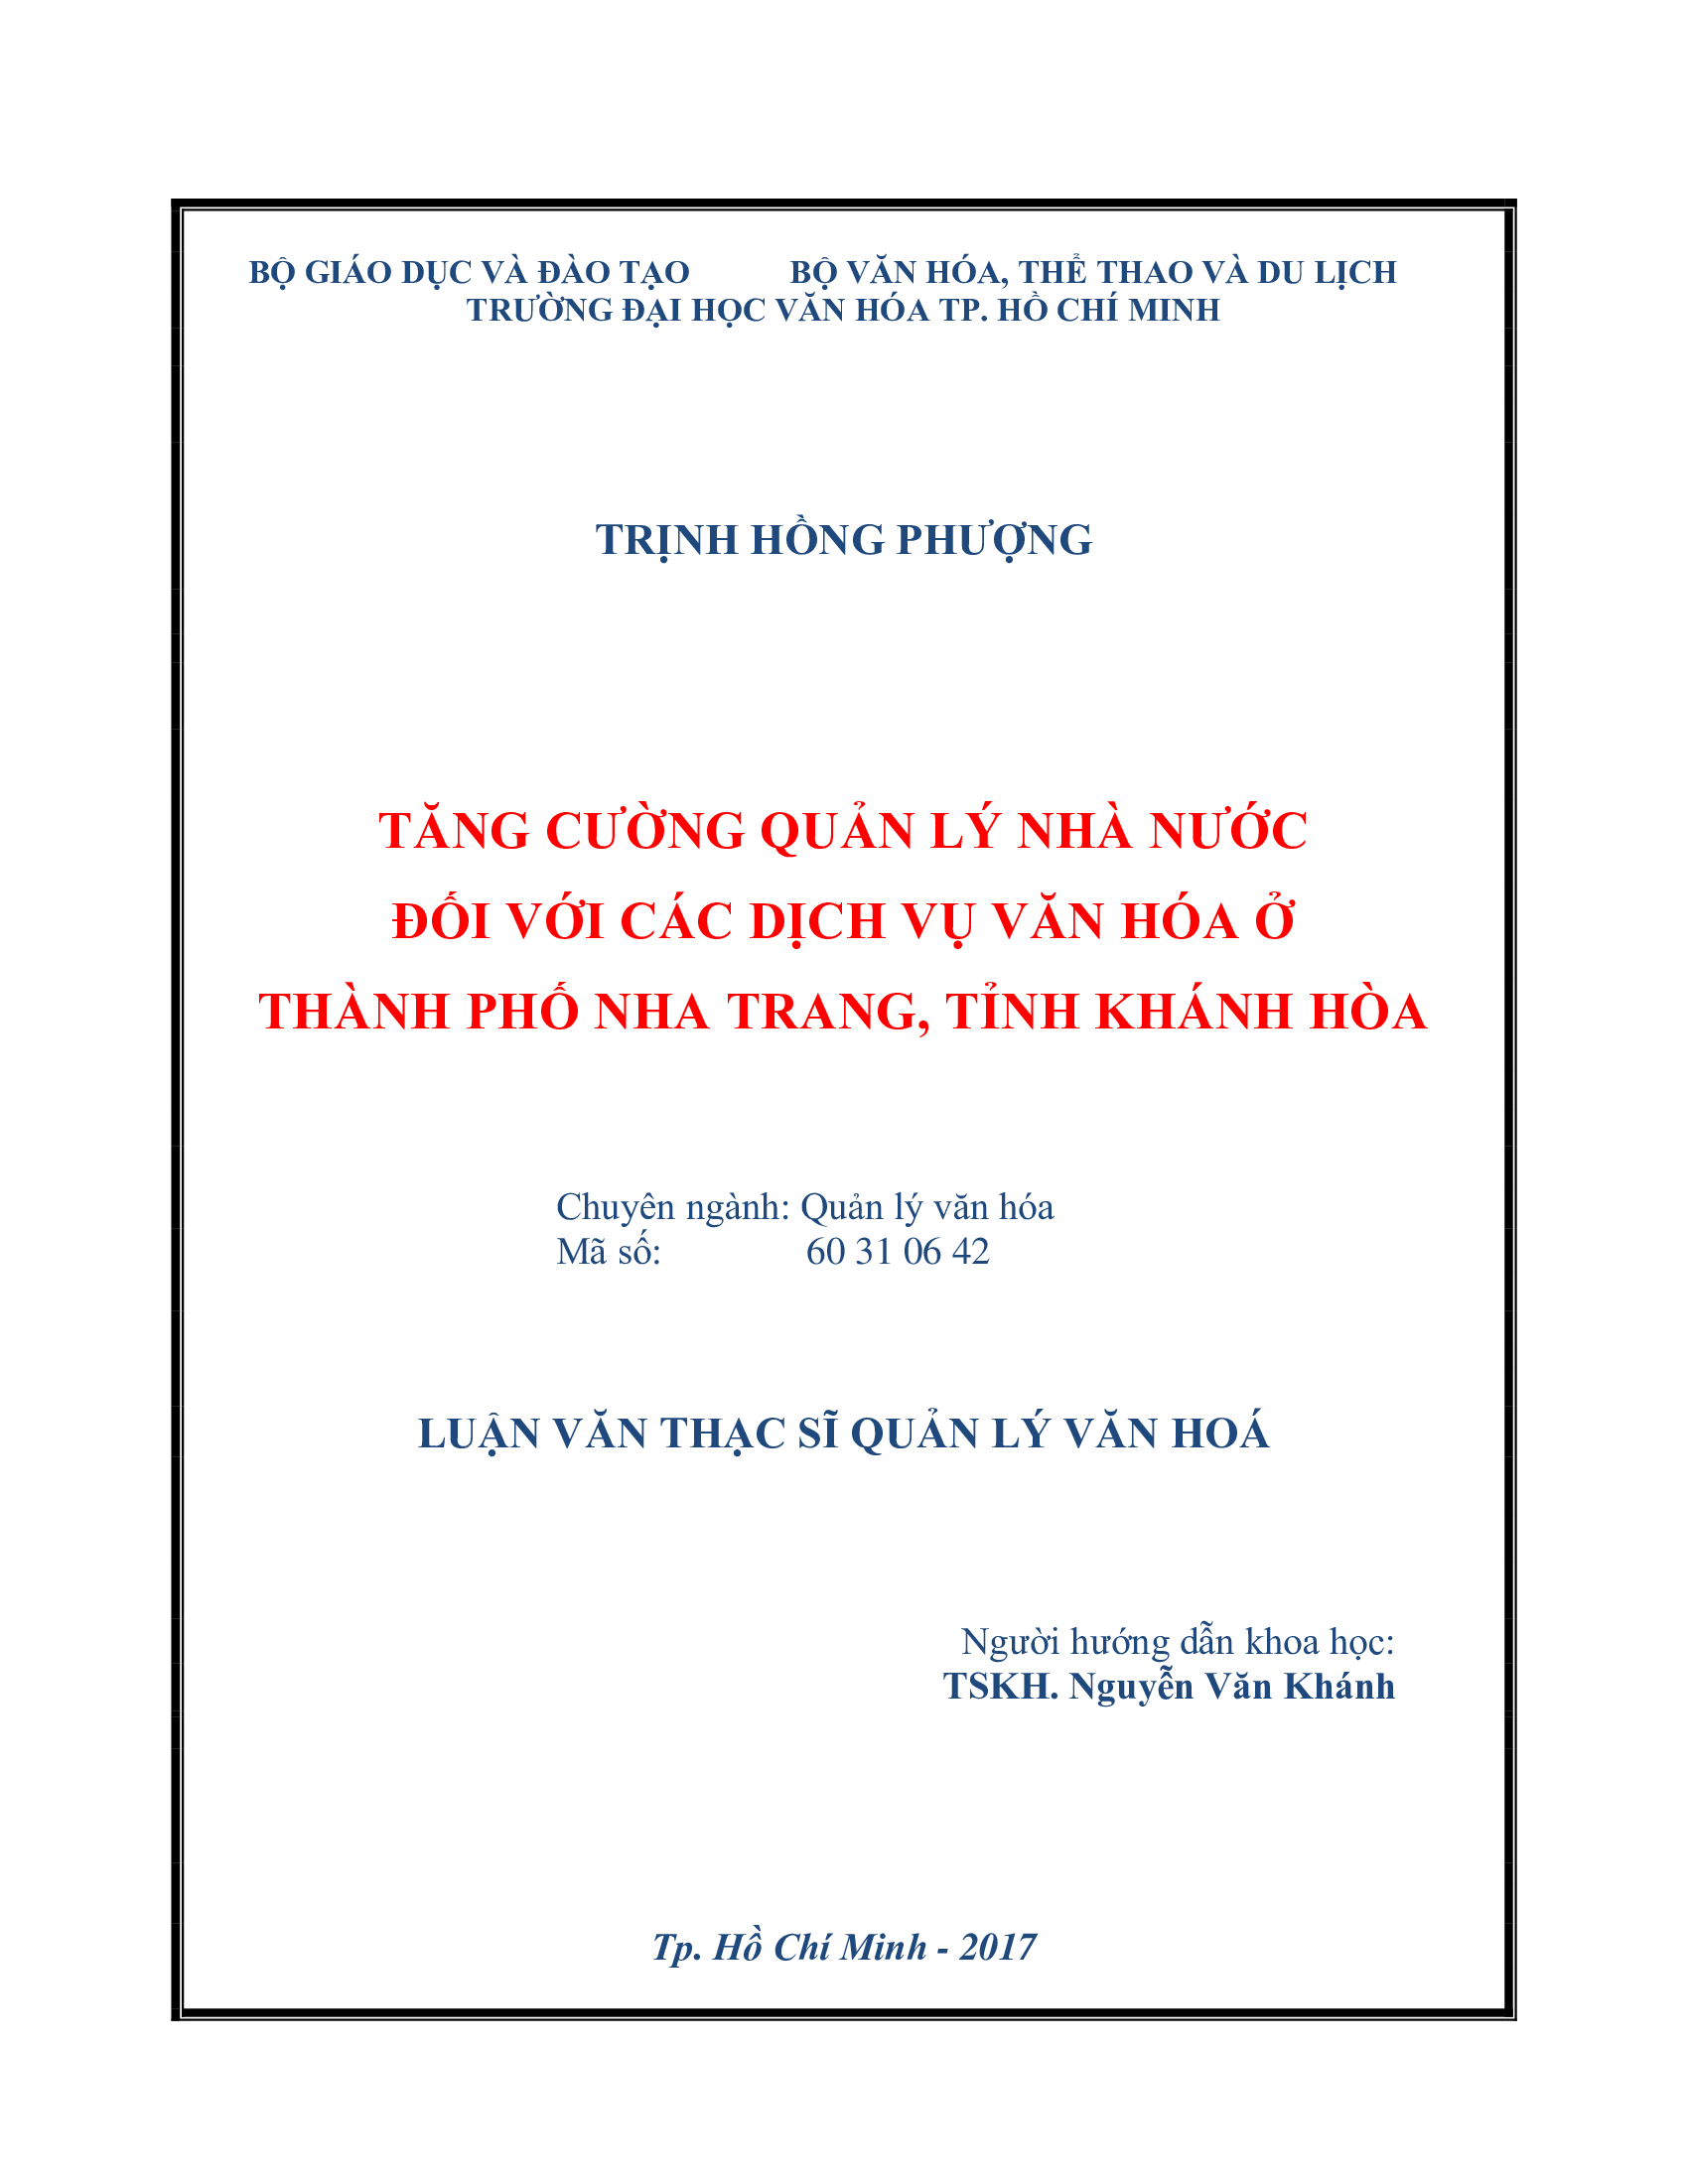 Tăng cường quản lý nhà nước đối với các dịch vụ văn hóa ở thành phố Nha Trang, tỉnh Khánh Hòa